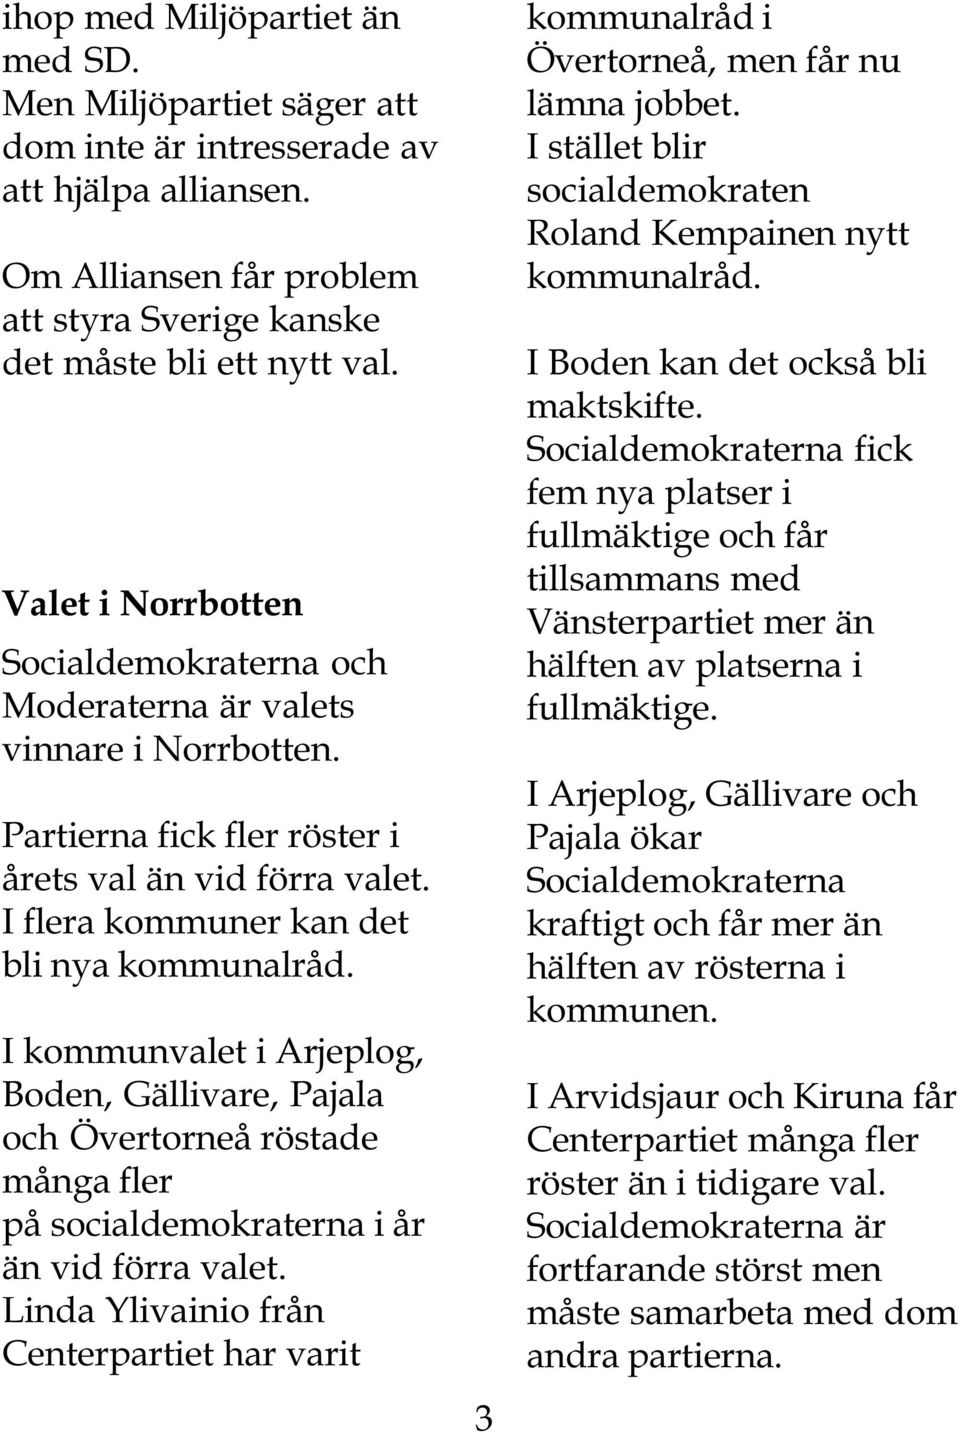 I kommunvalet i Arjeplog, Boden, Gällivare, Pajala och Övertorneå röstade många fler på socialdemokraterna i år än vid förra valet.